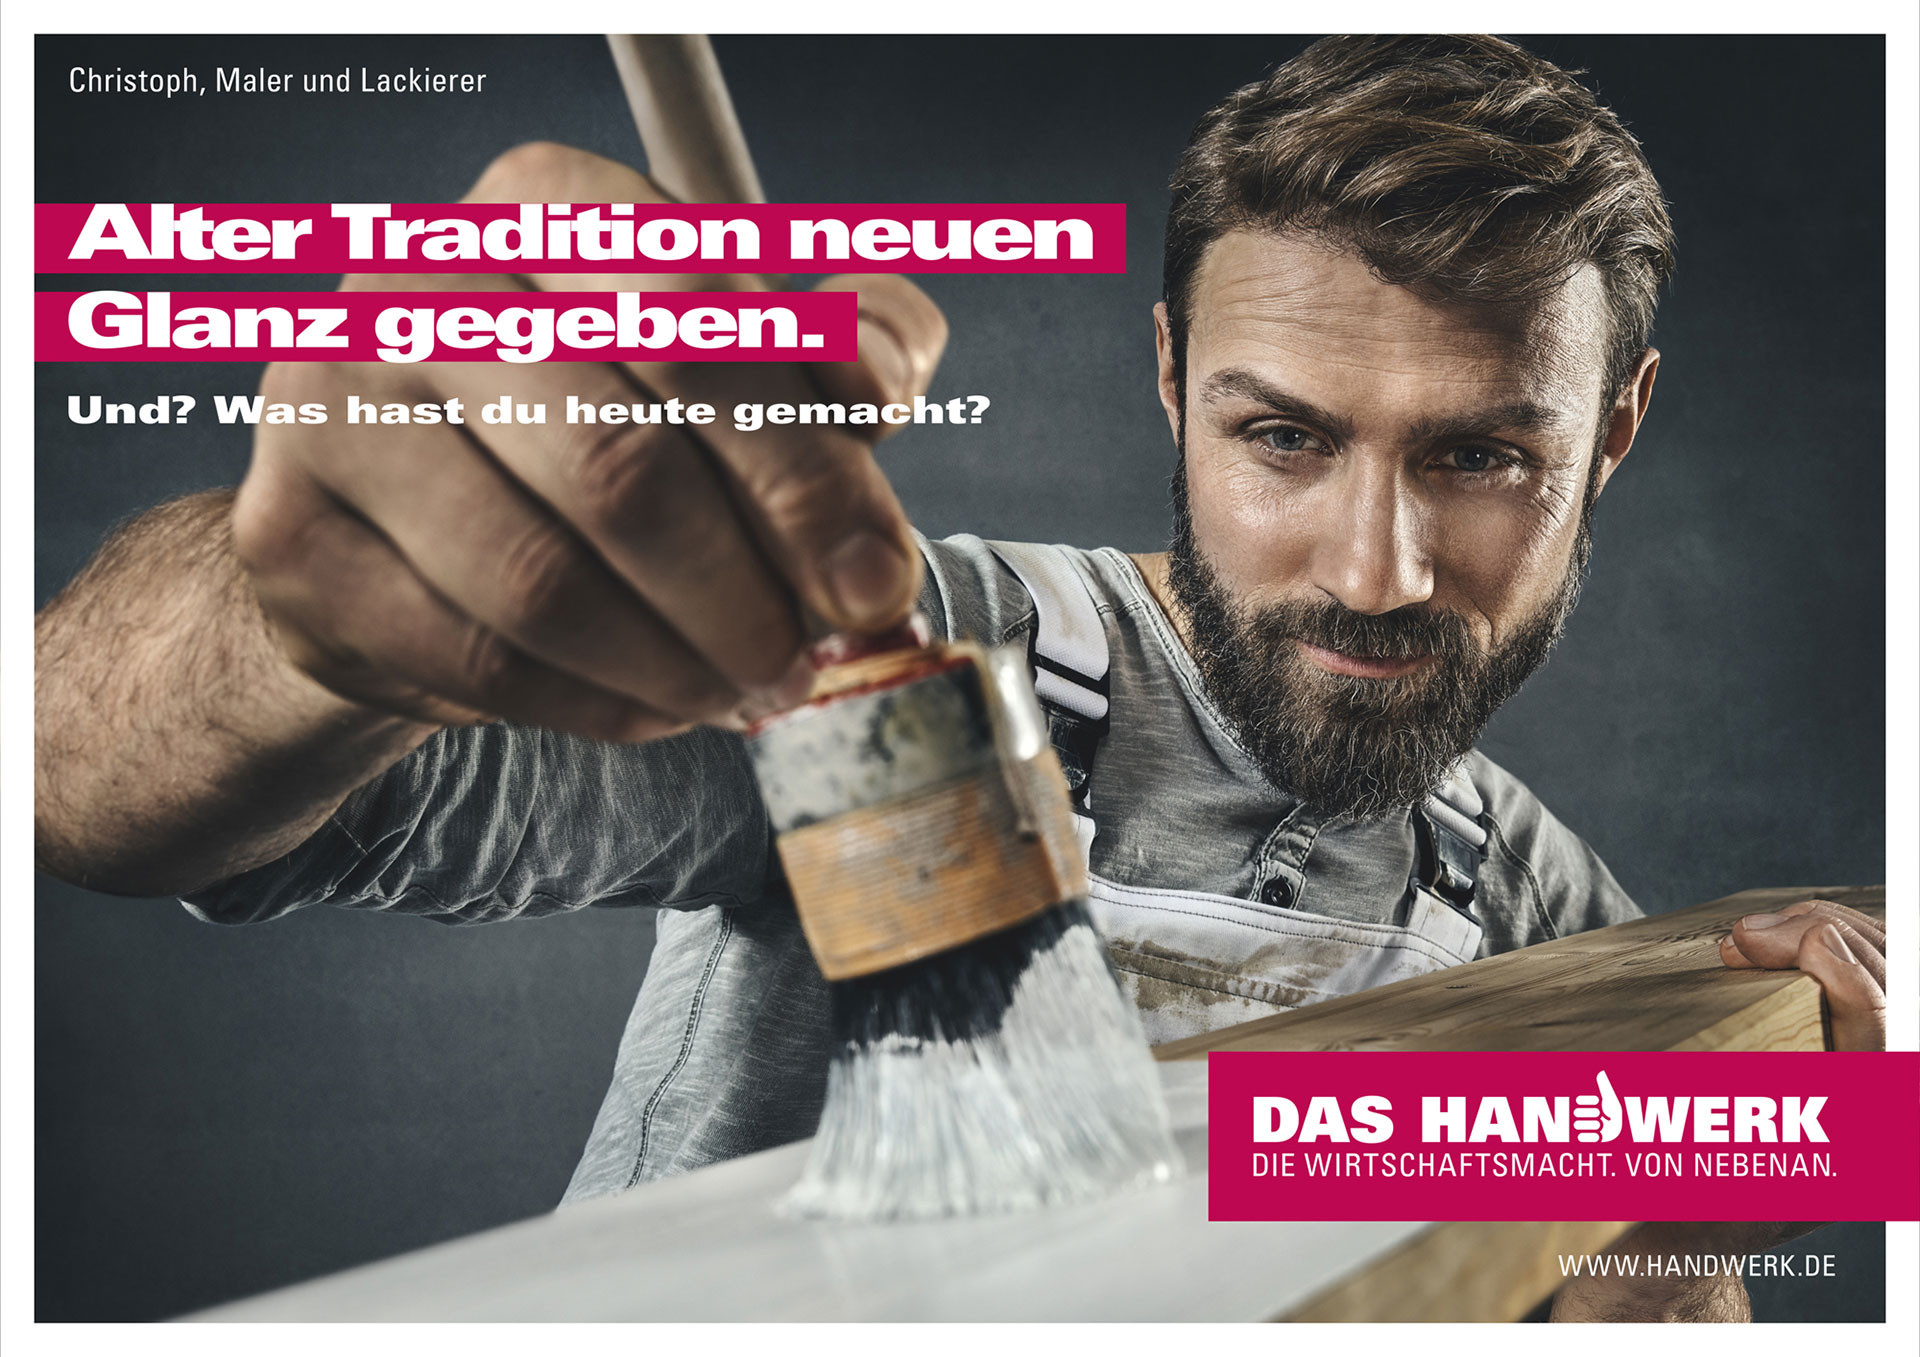 Das Handwerk Werbung
 Markus Mueller DAS HANDWERK Kampagne Und Was hast Du